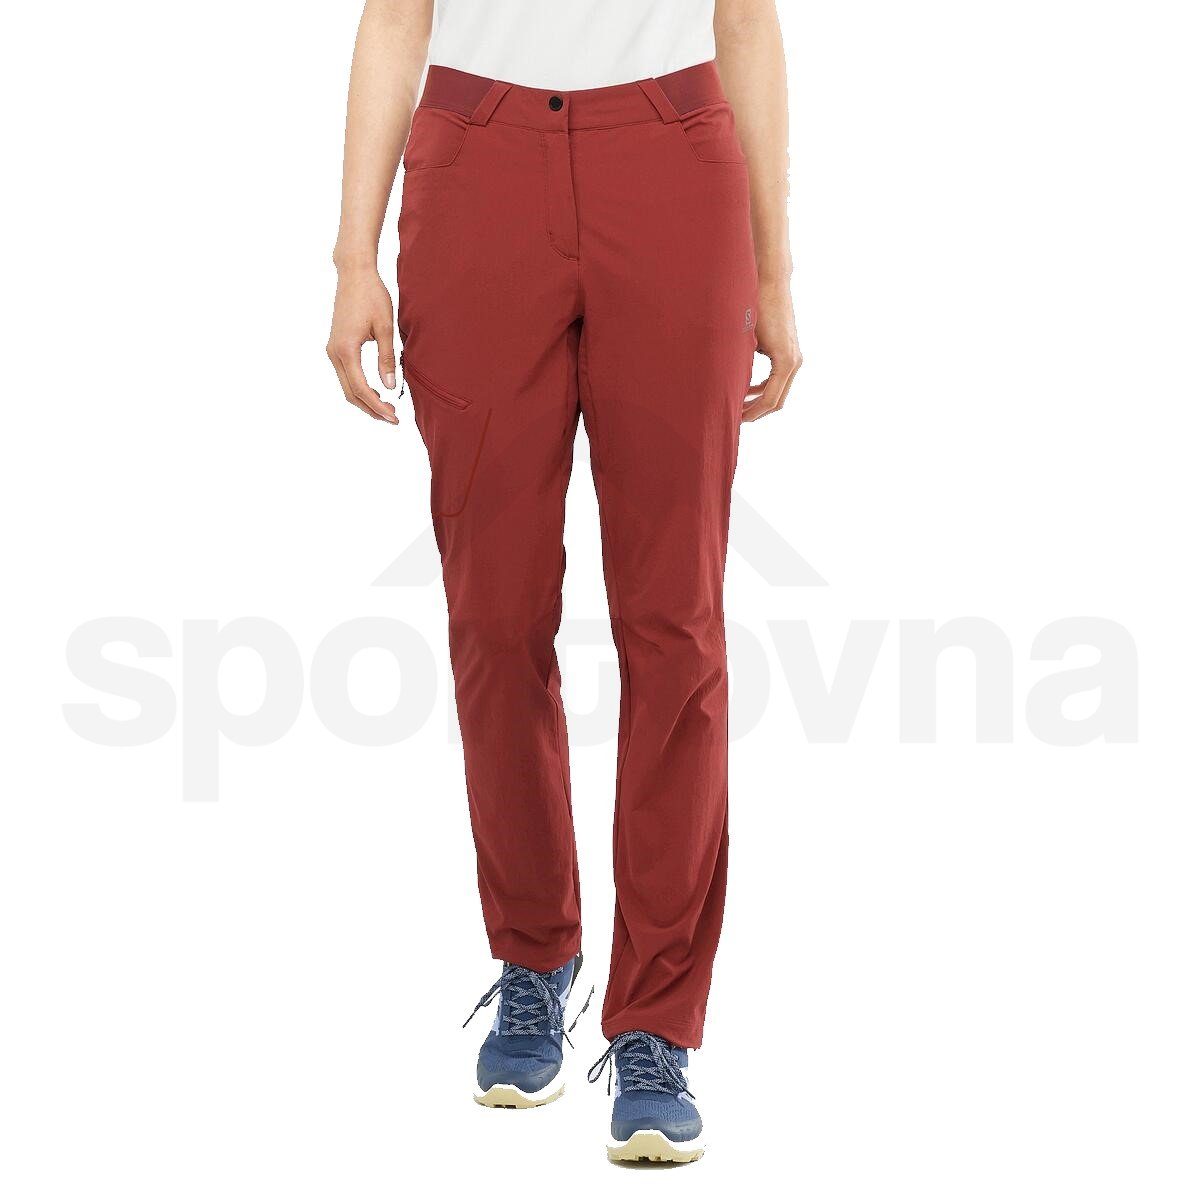 Kalhoty Salomon WAYFARER PANTS W - červená (prodloužená délka)